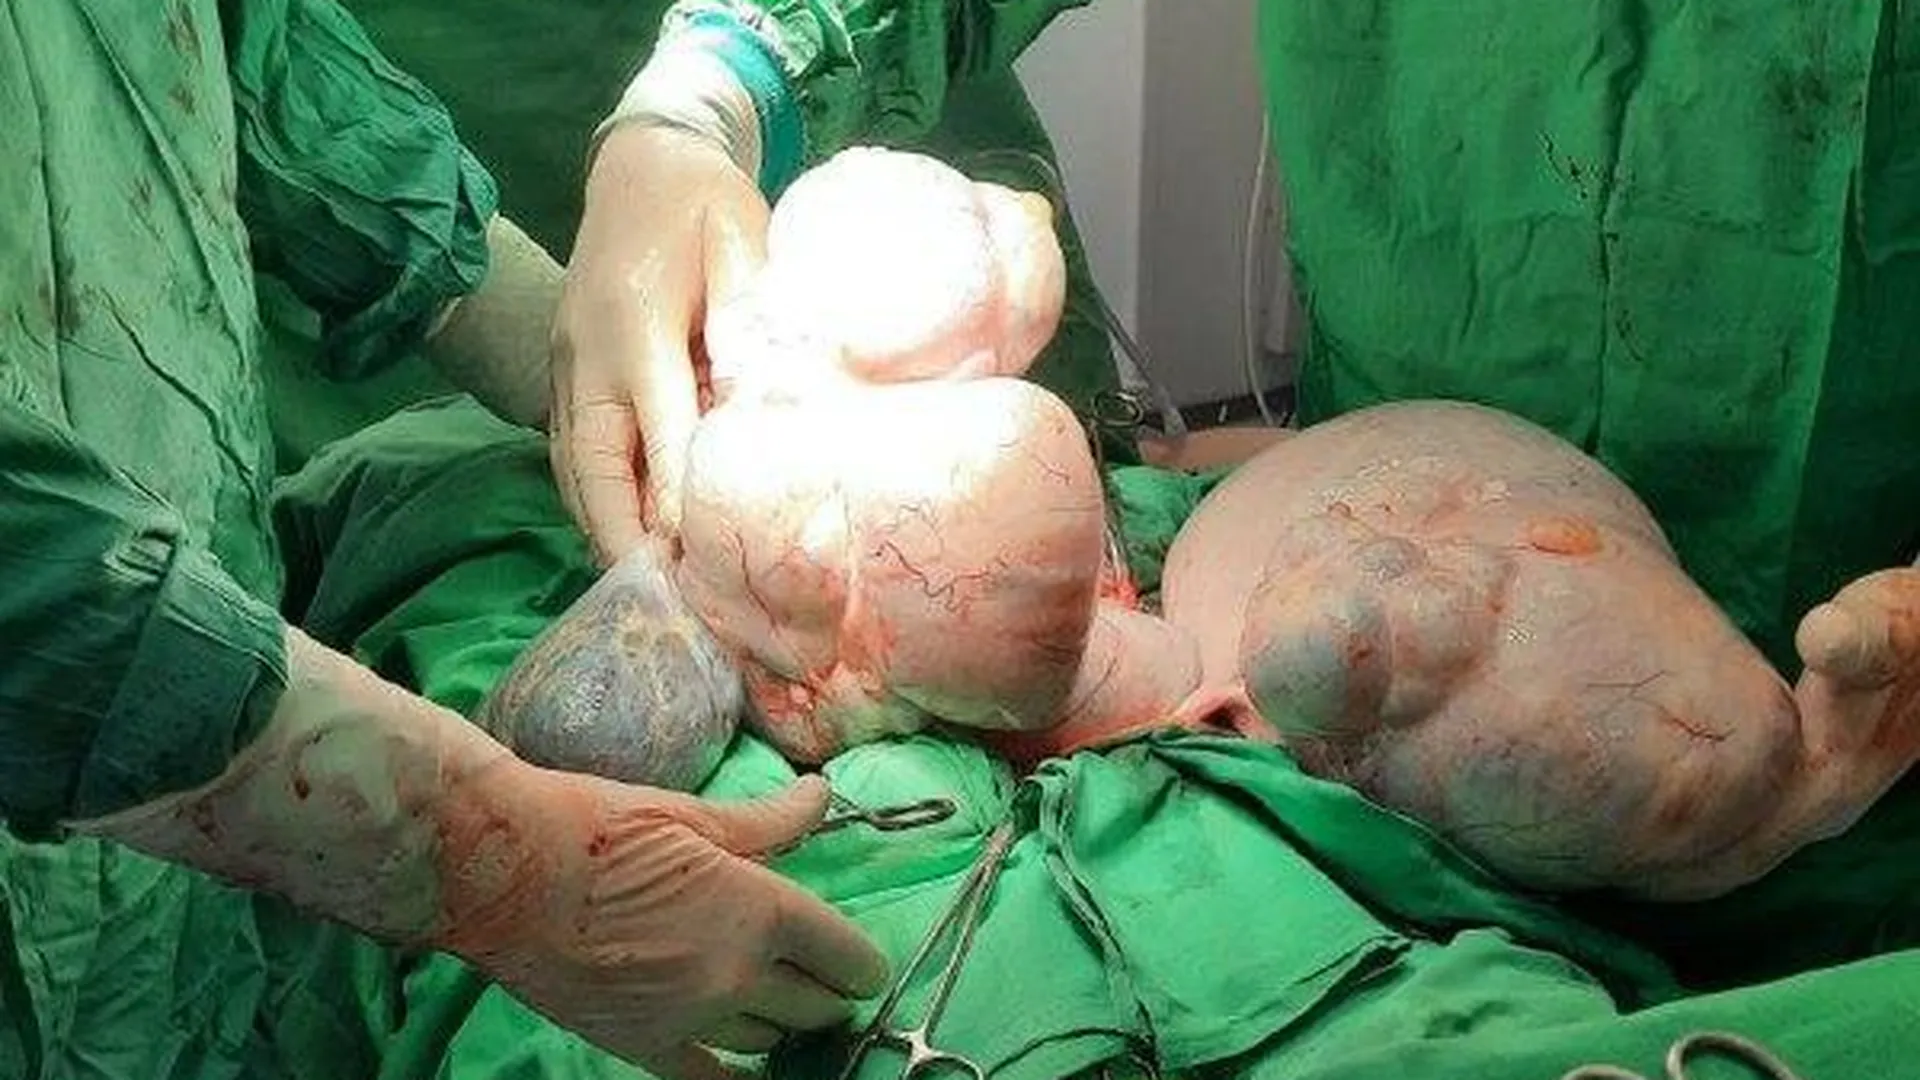 Подмосковные врачи спасли женщину с двумя опухолями яичников весом почти 20 кг